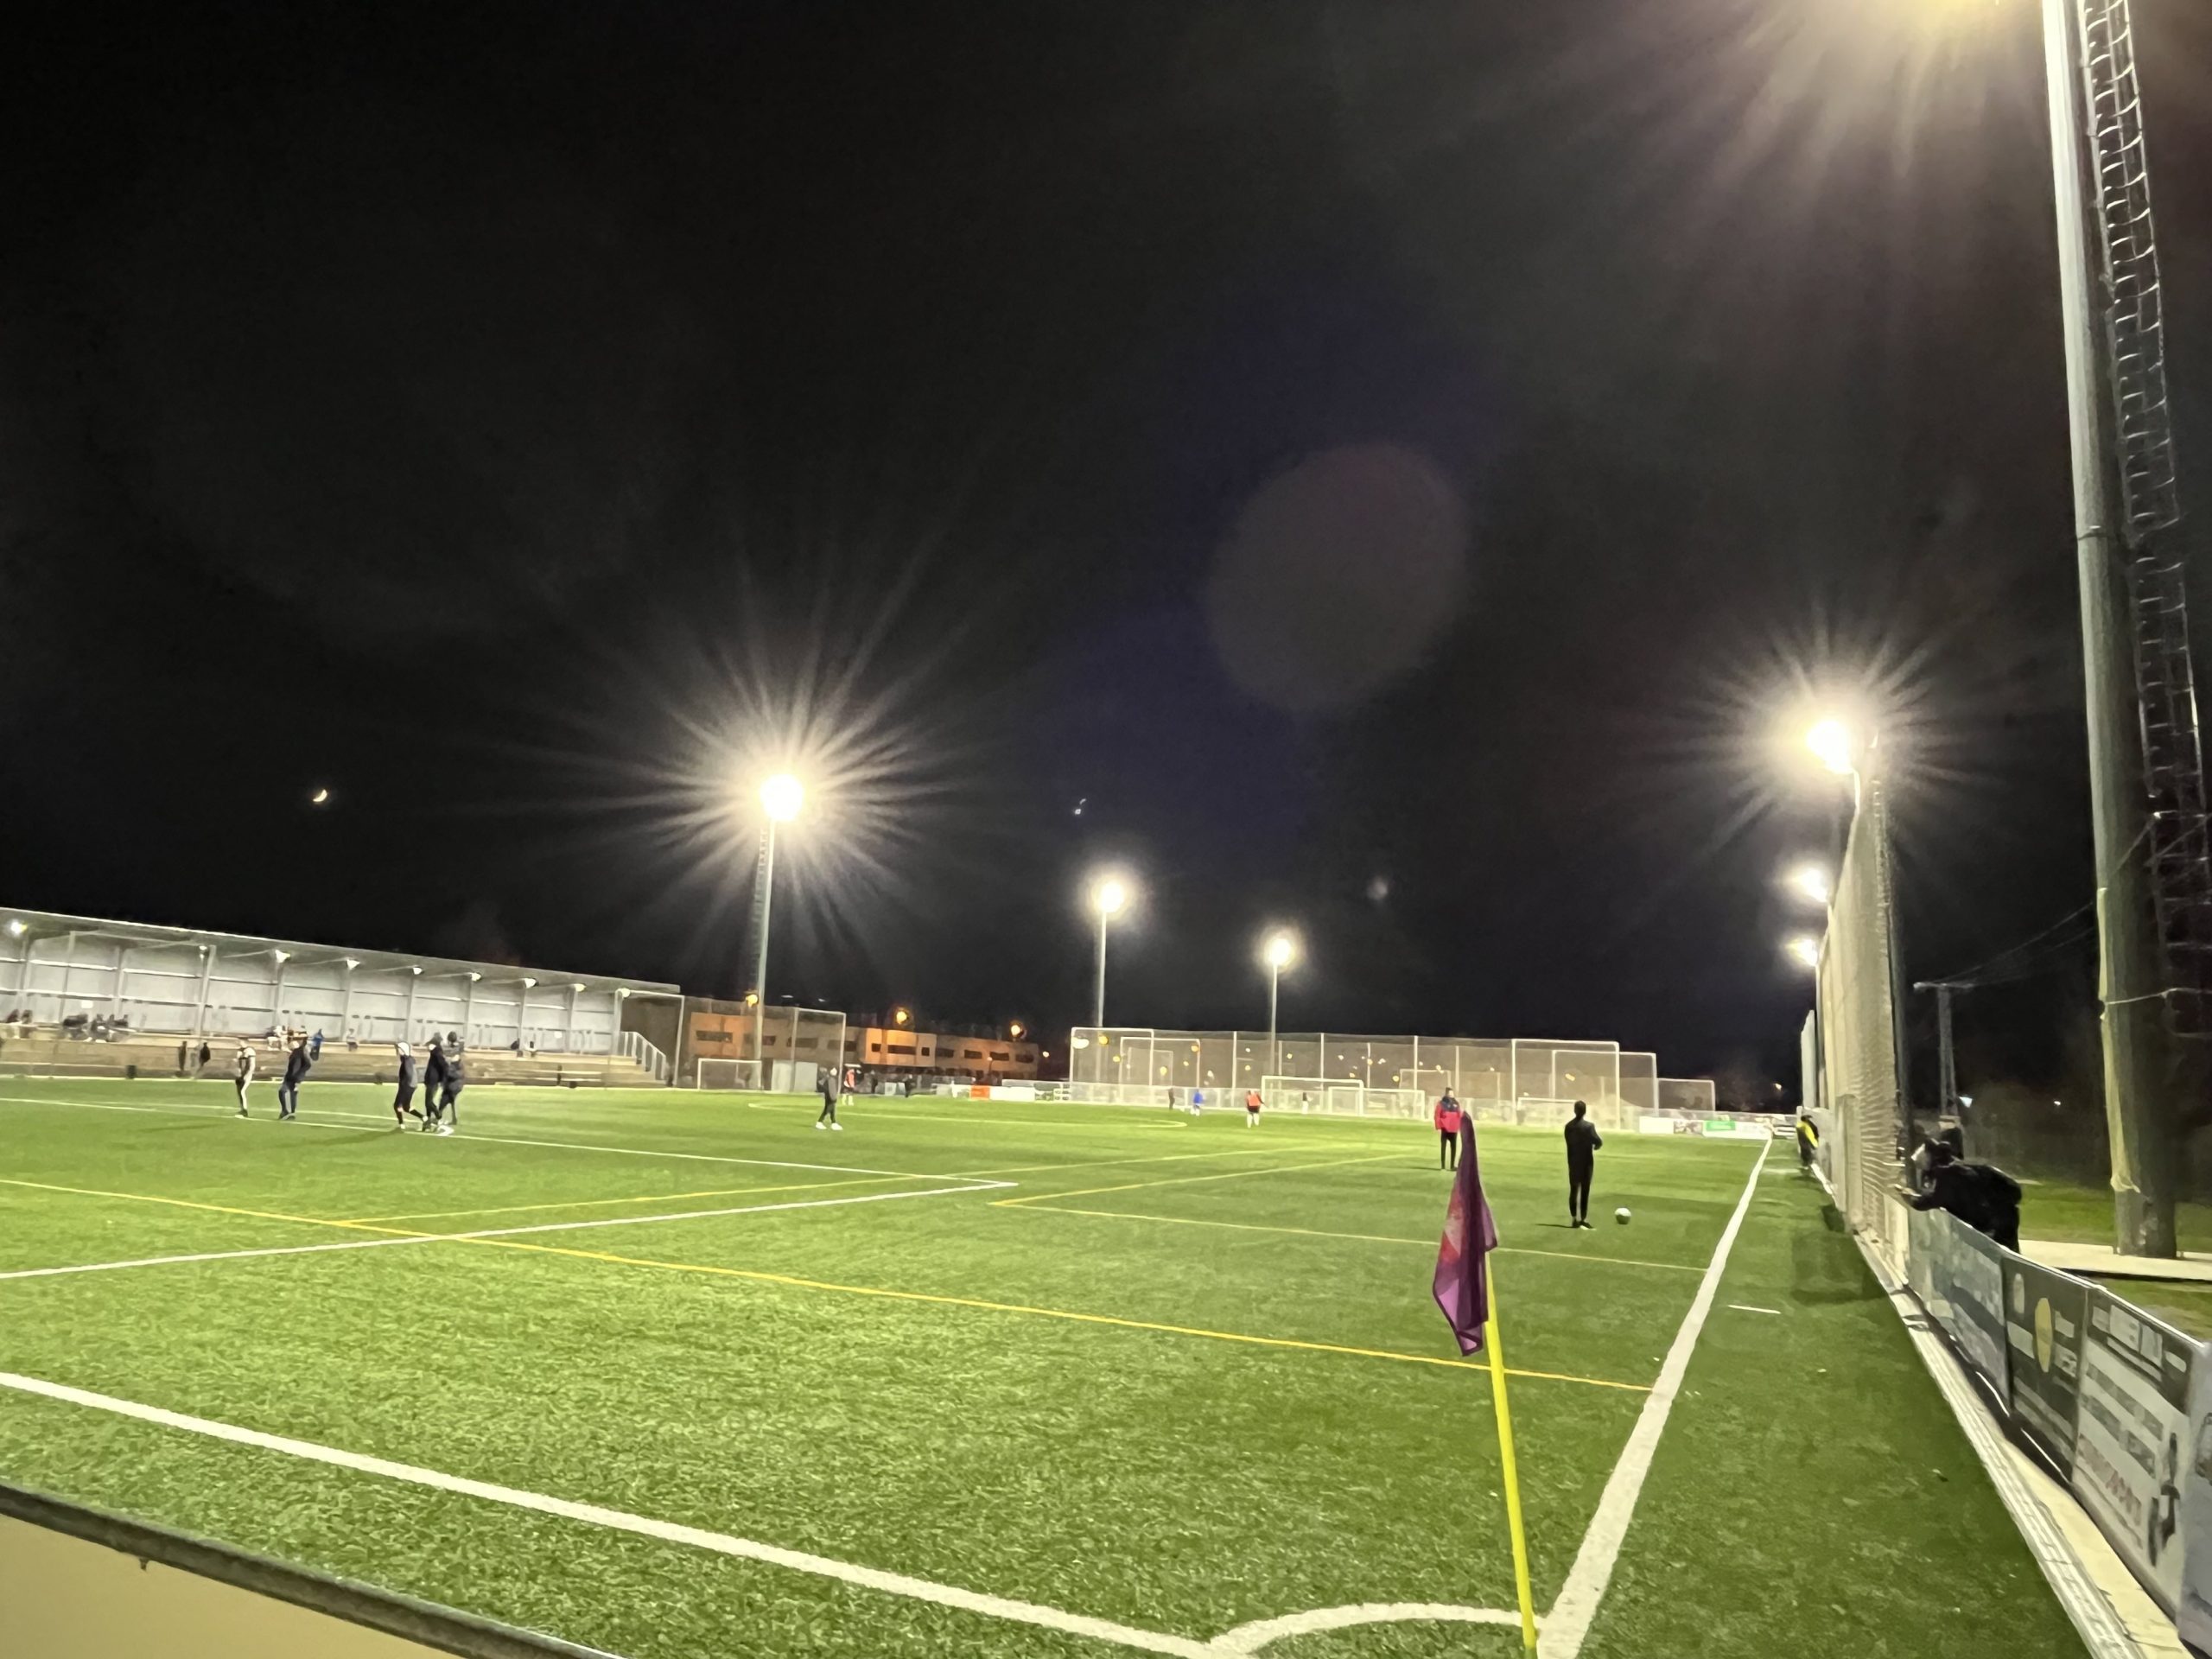 Proyecto de iluminación campo de futbol Sancti Espíritu 1 y 2 en Ávila